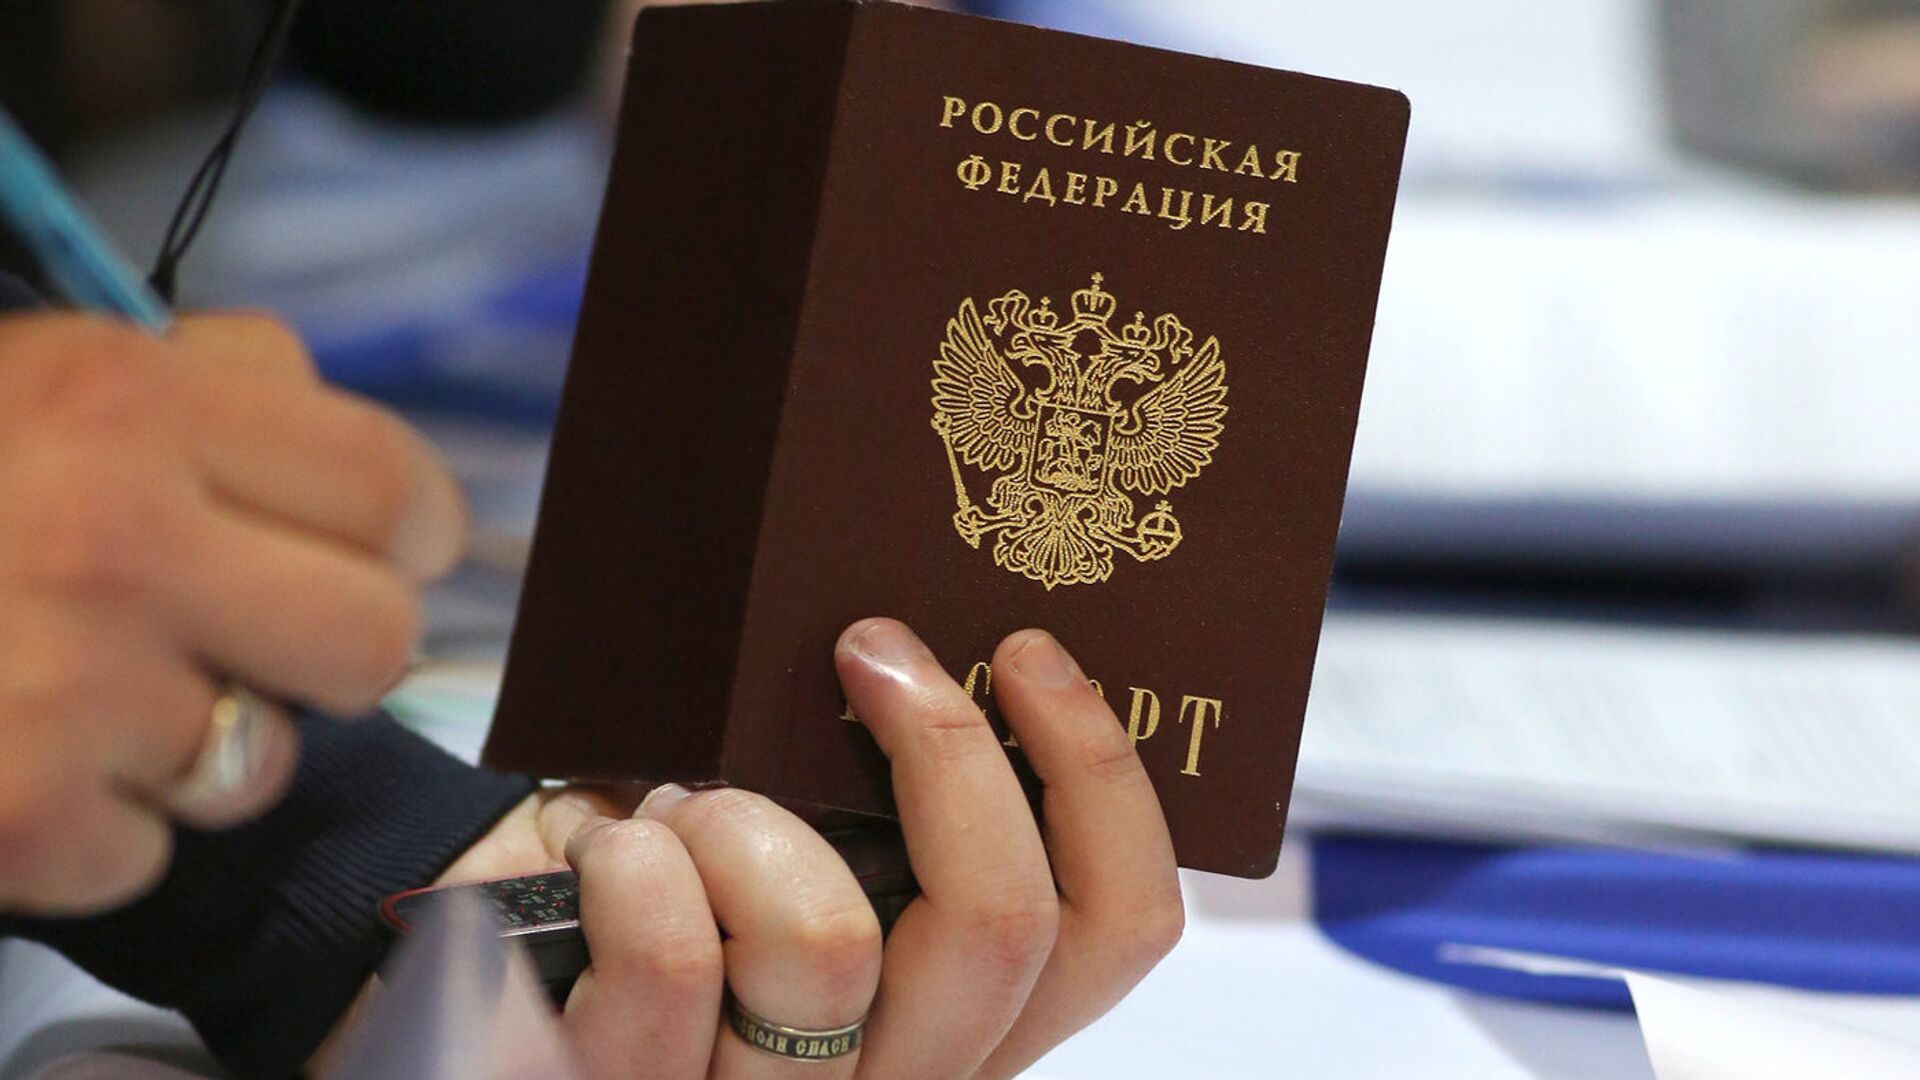 Российский паспорт - Sputnik Тоҷикистон, 1920, 01.02.2021